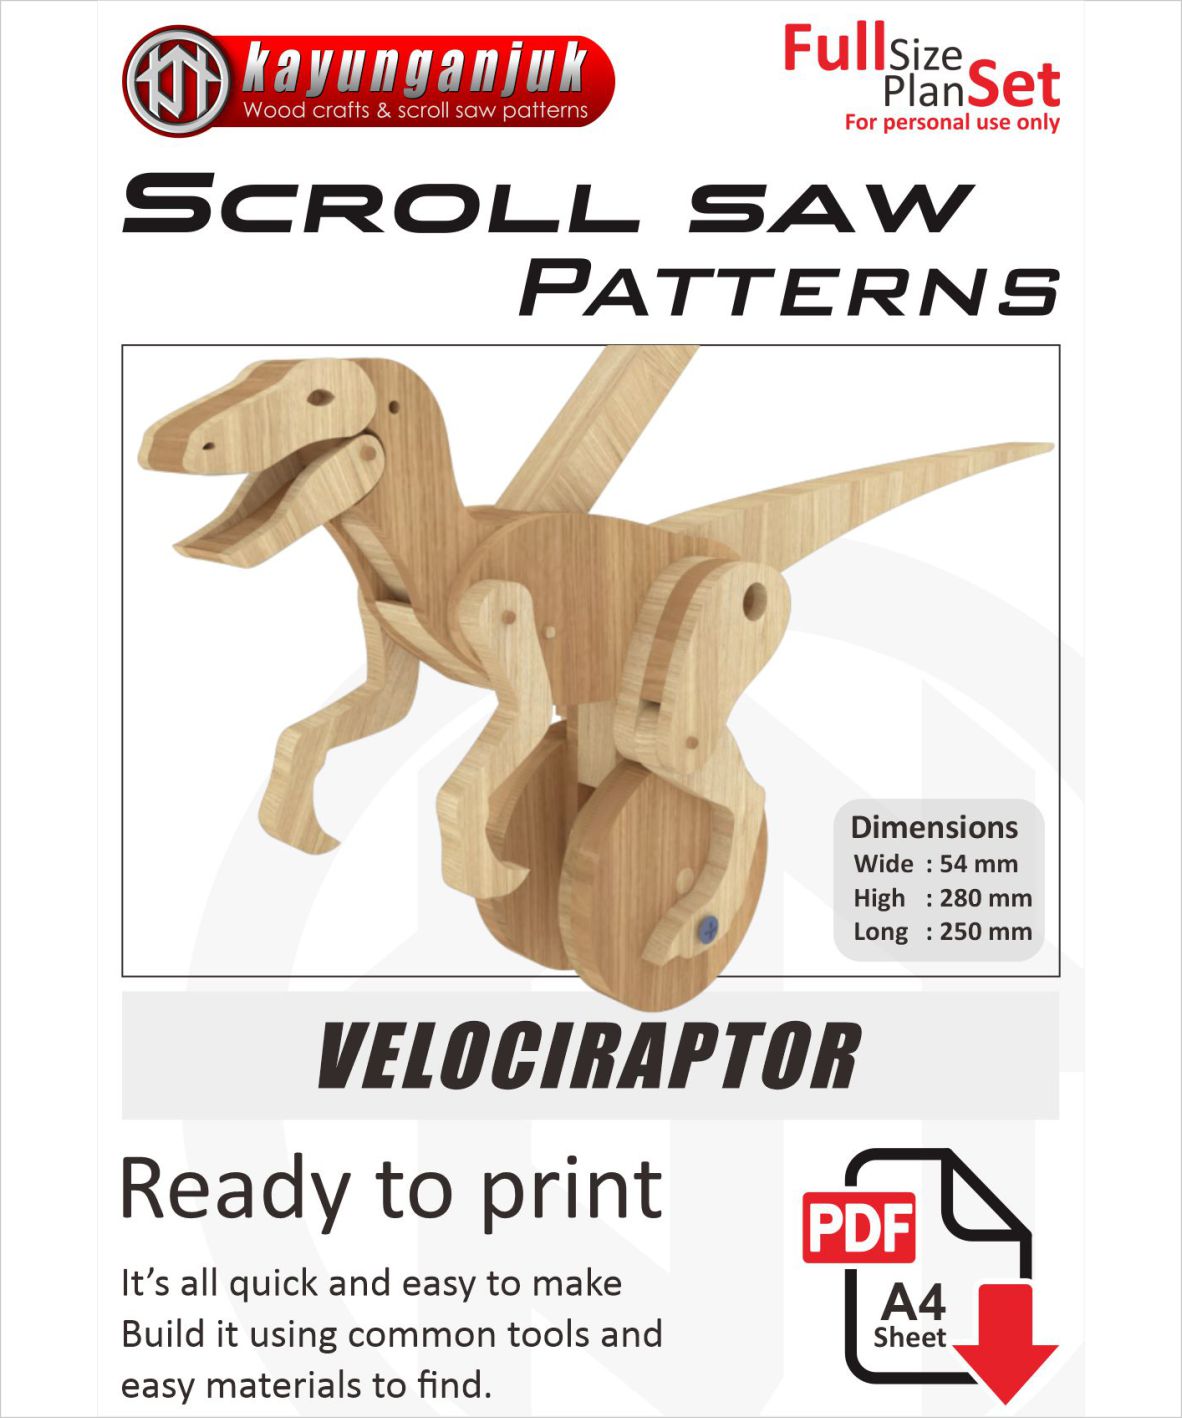 Velociraptor Wooden Toy Plans